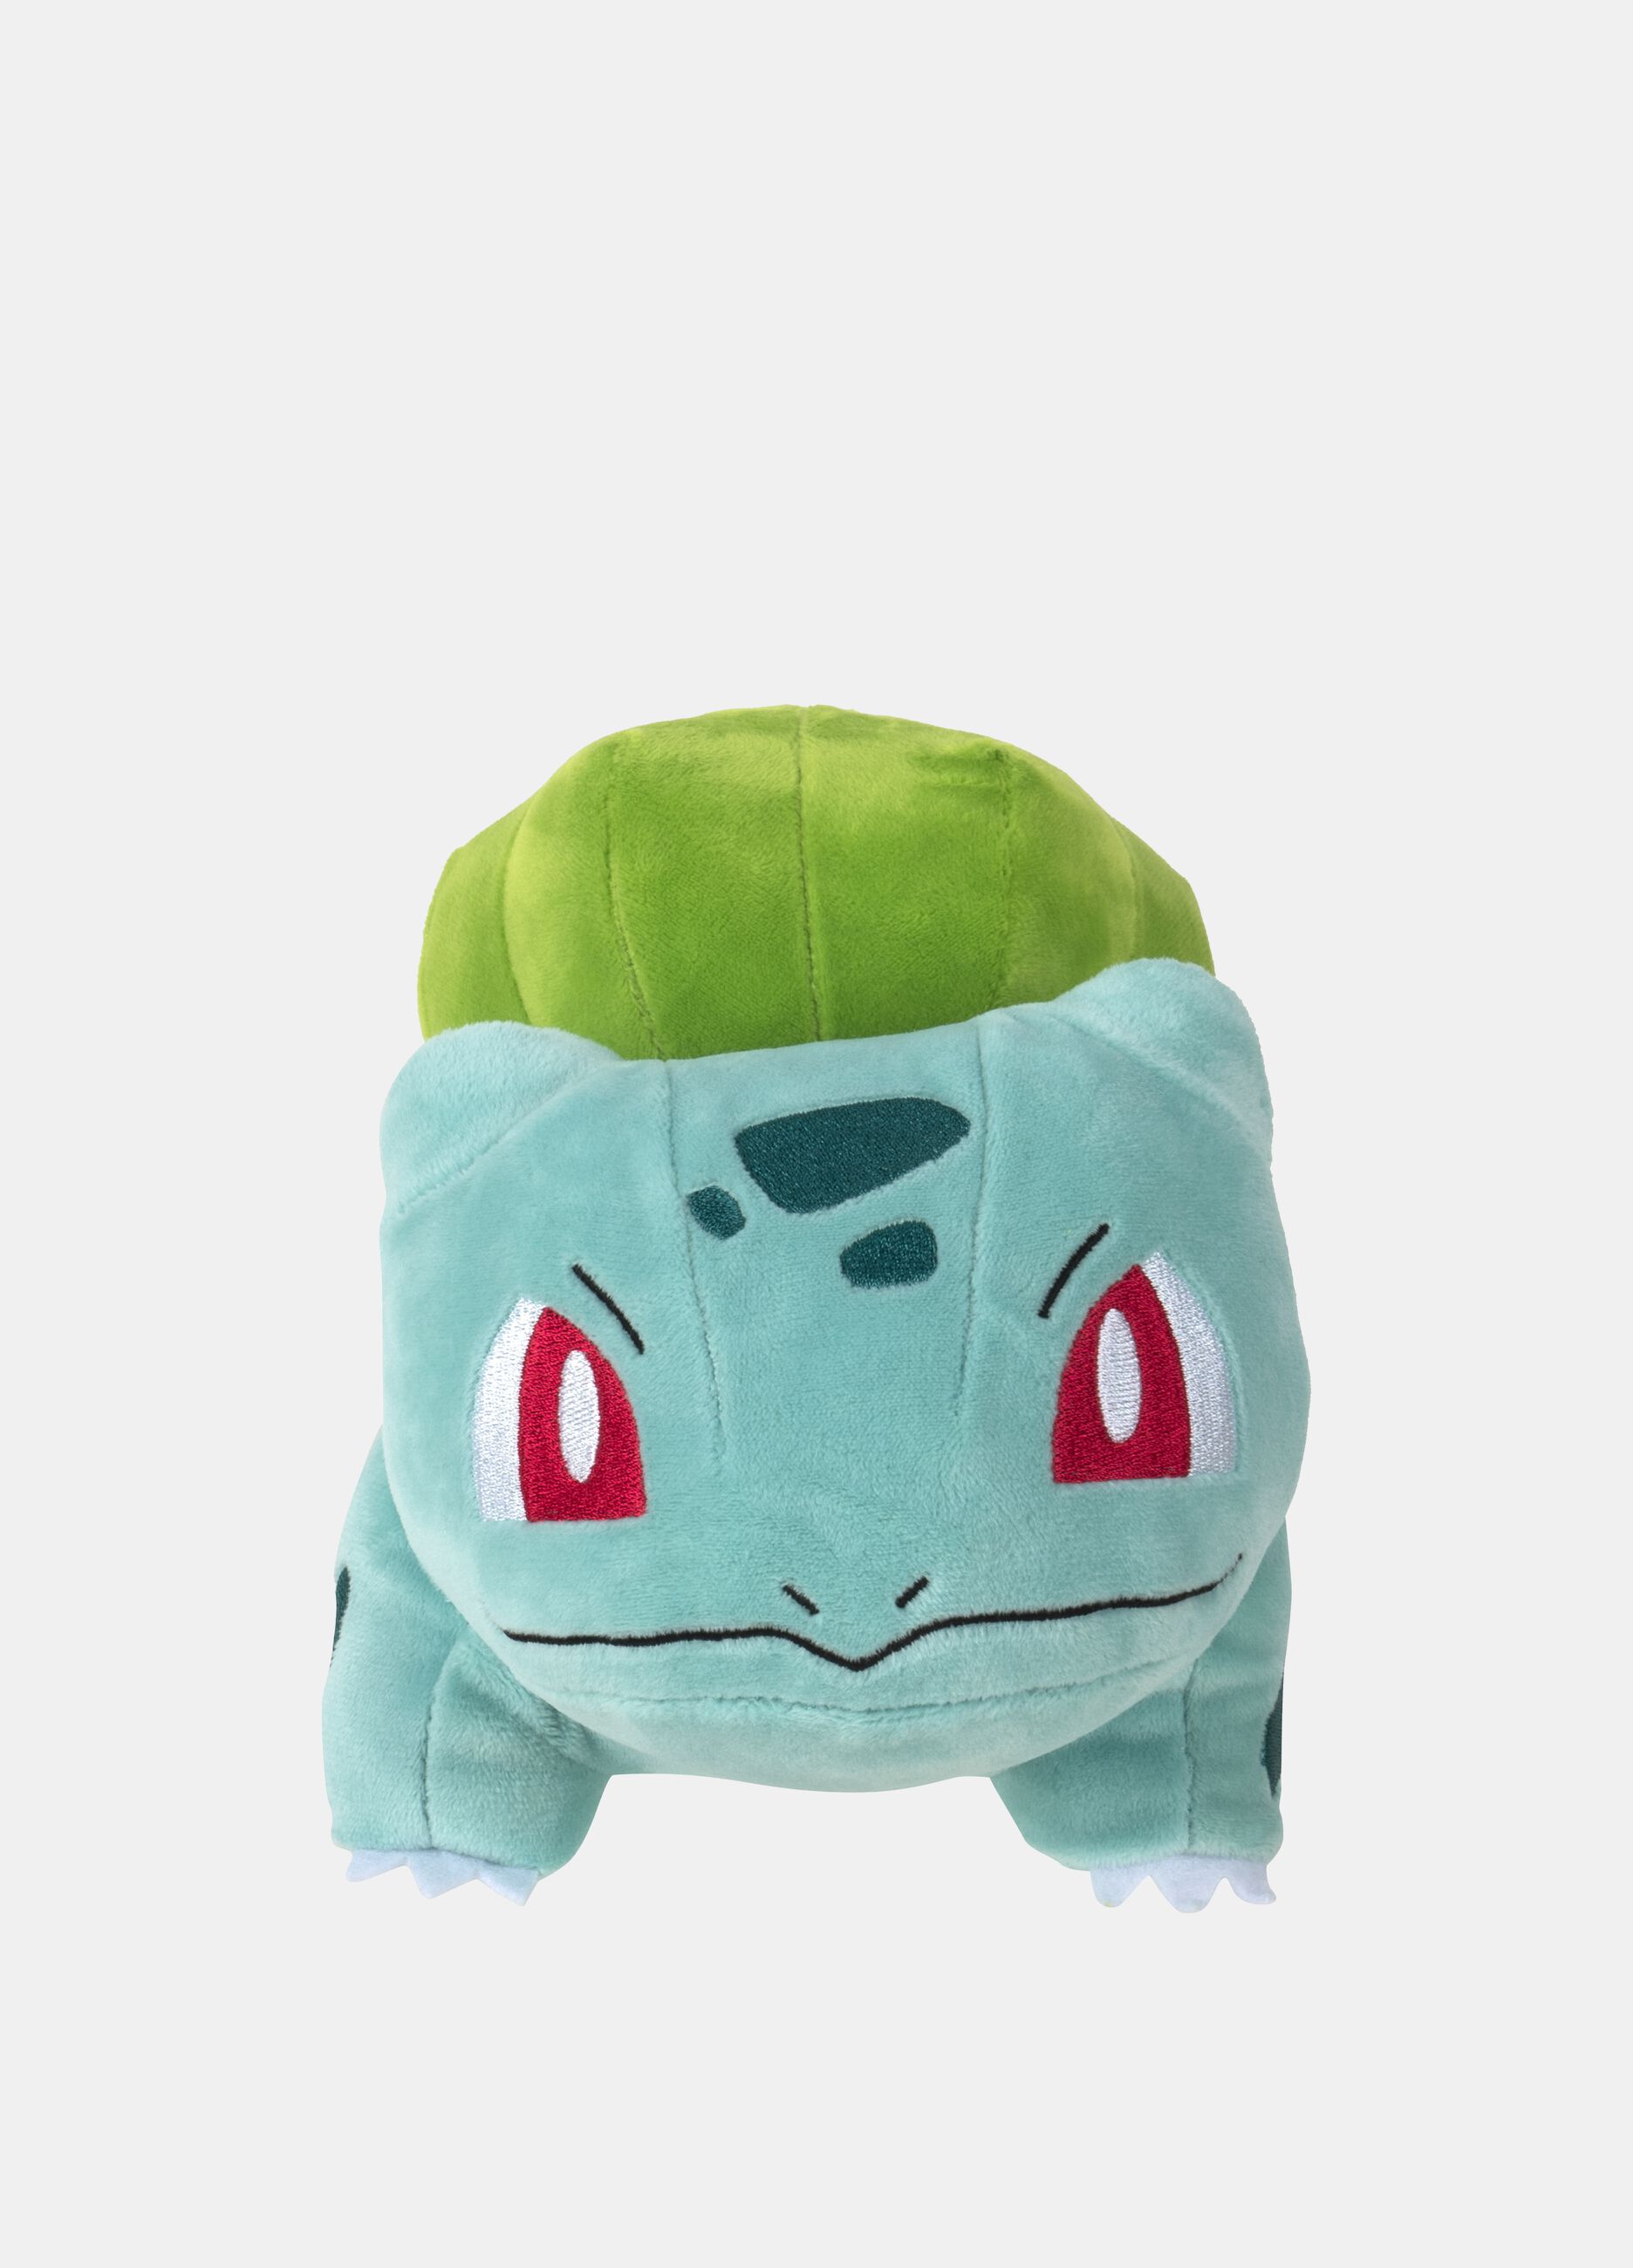 Pokémon Bulbasaur soft toy